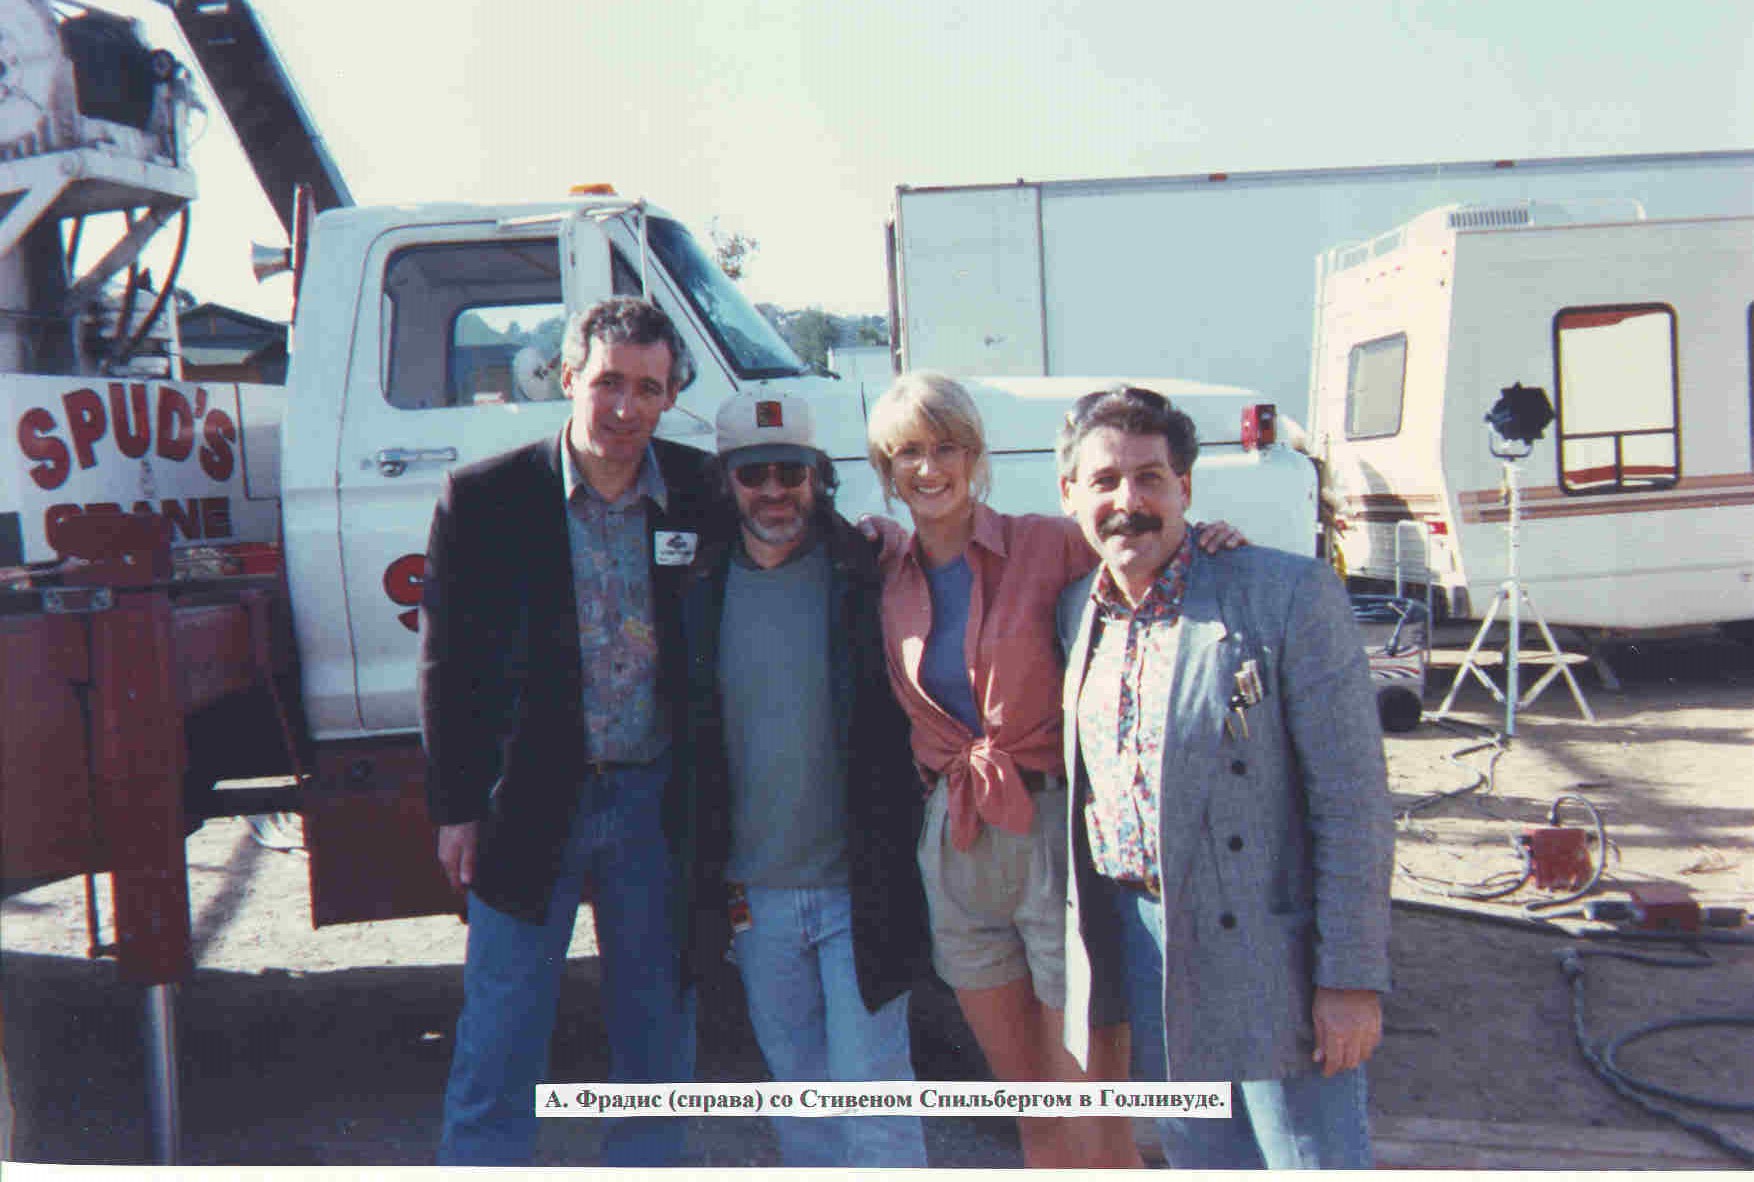 With Steven Spielberg, Laura Dern & Waldemar Dabrowski